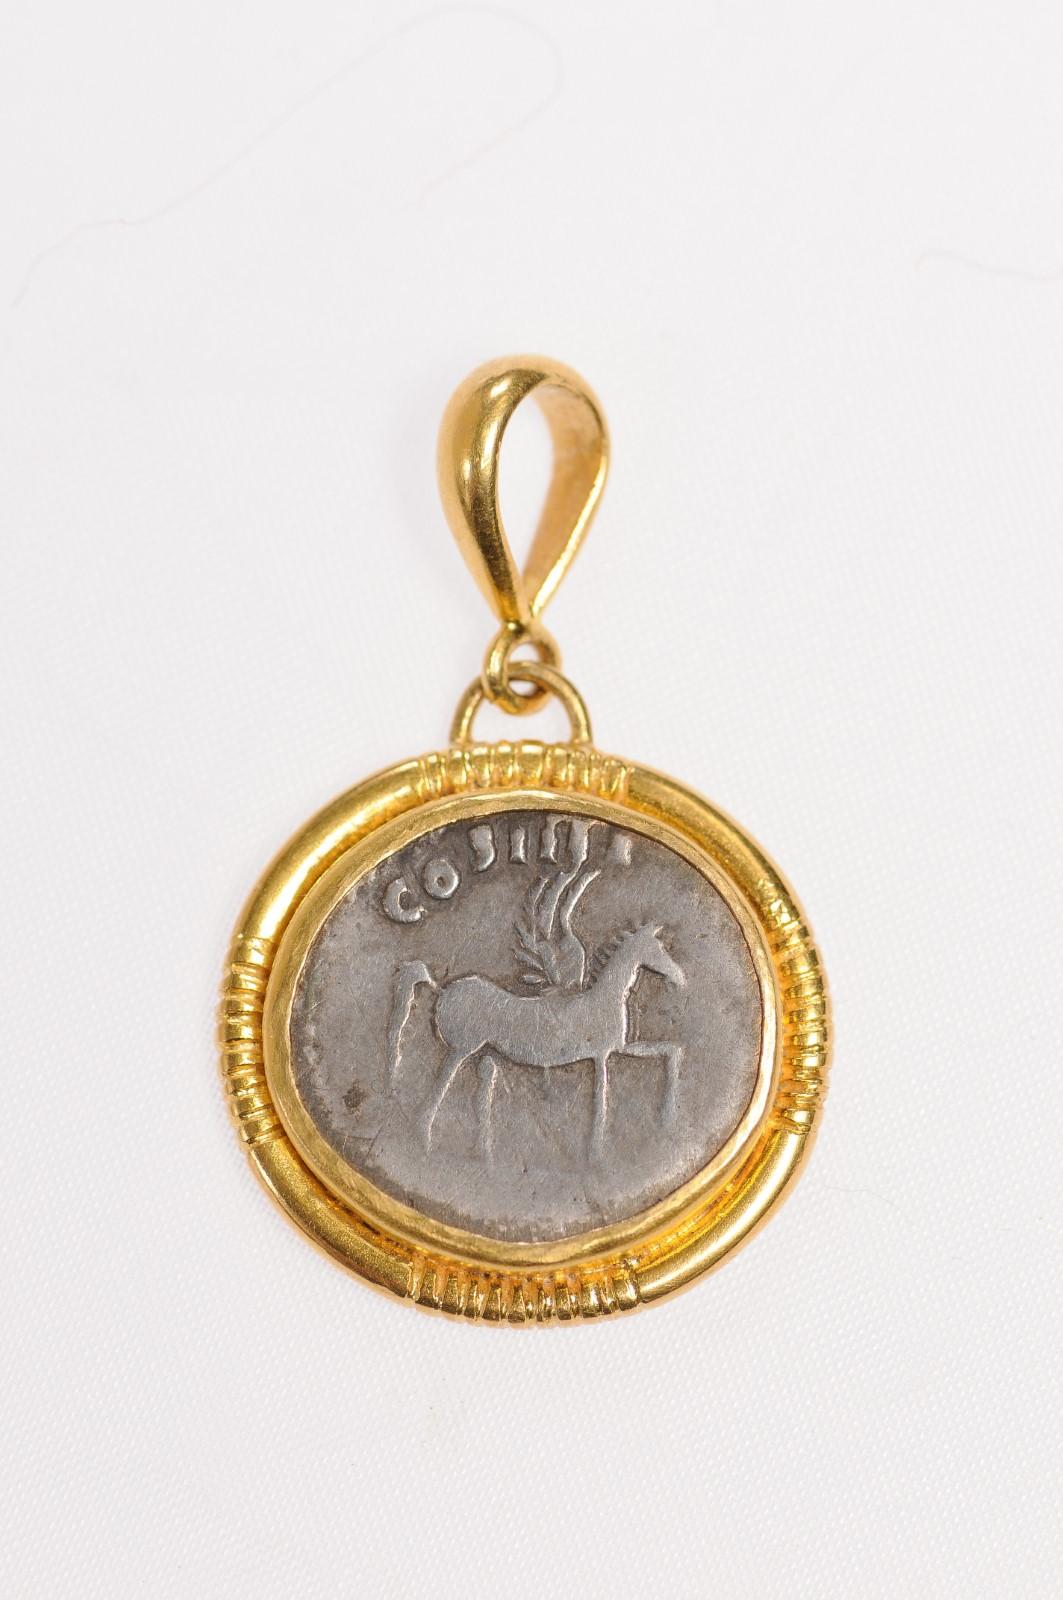 Authentique pièce de Domitien, Denarius en argent (Circa 76 ADS), sertie dans un chaton en or 22k personnalisé avec une attache en or 22k. Le pendentif représente un Pégase ailé, debout à droite, le pied levé, avec COS IIII au-dessus. Revers